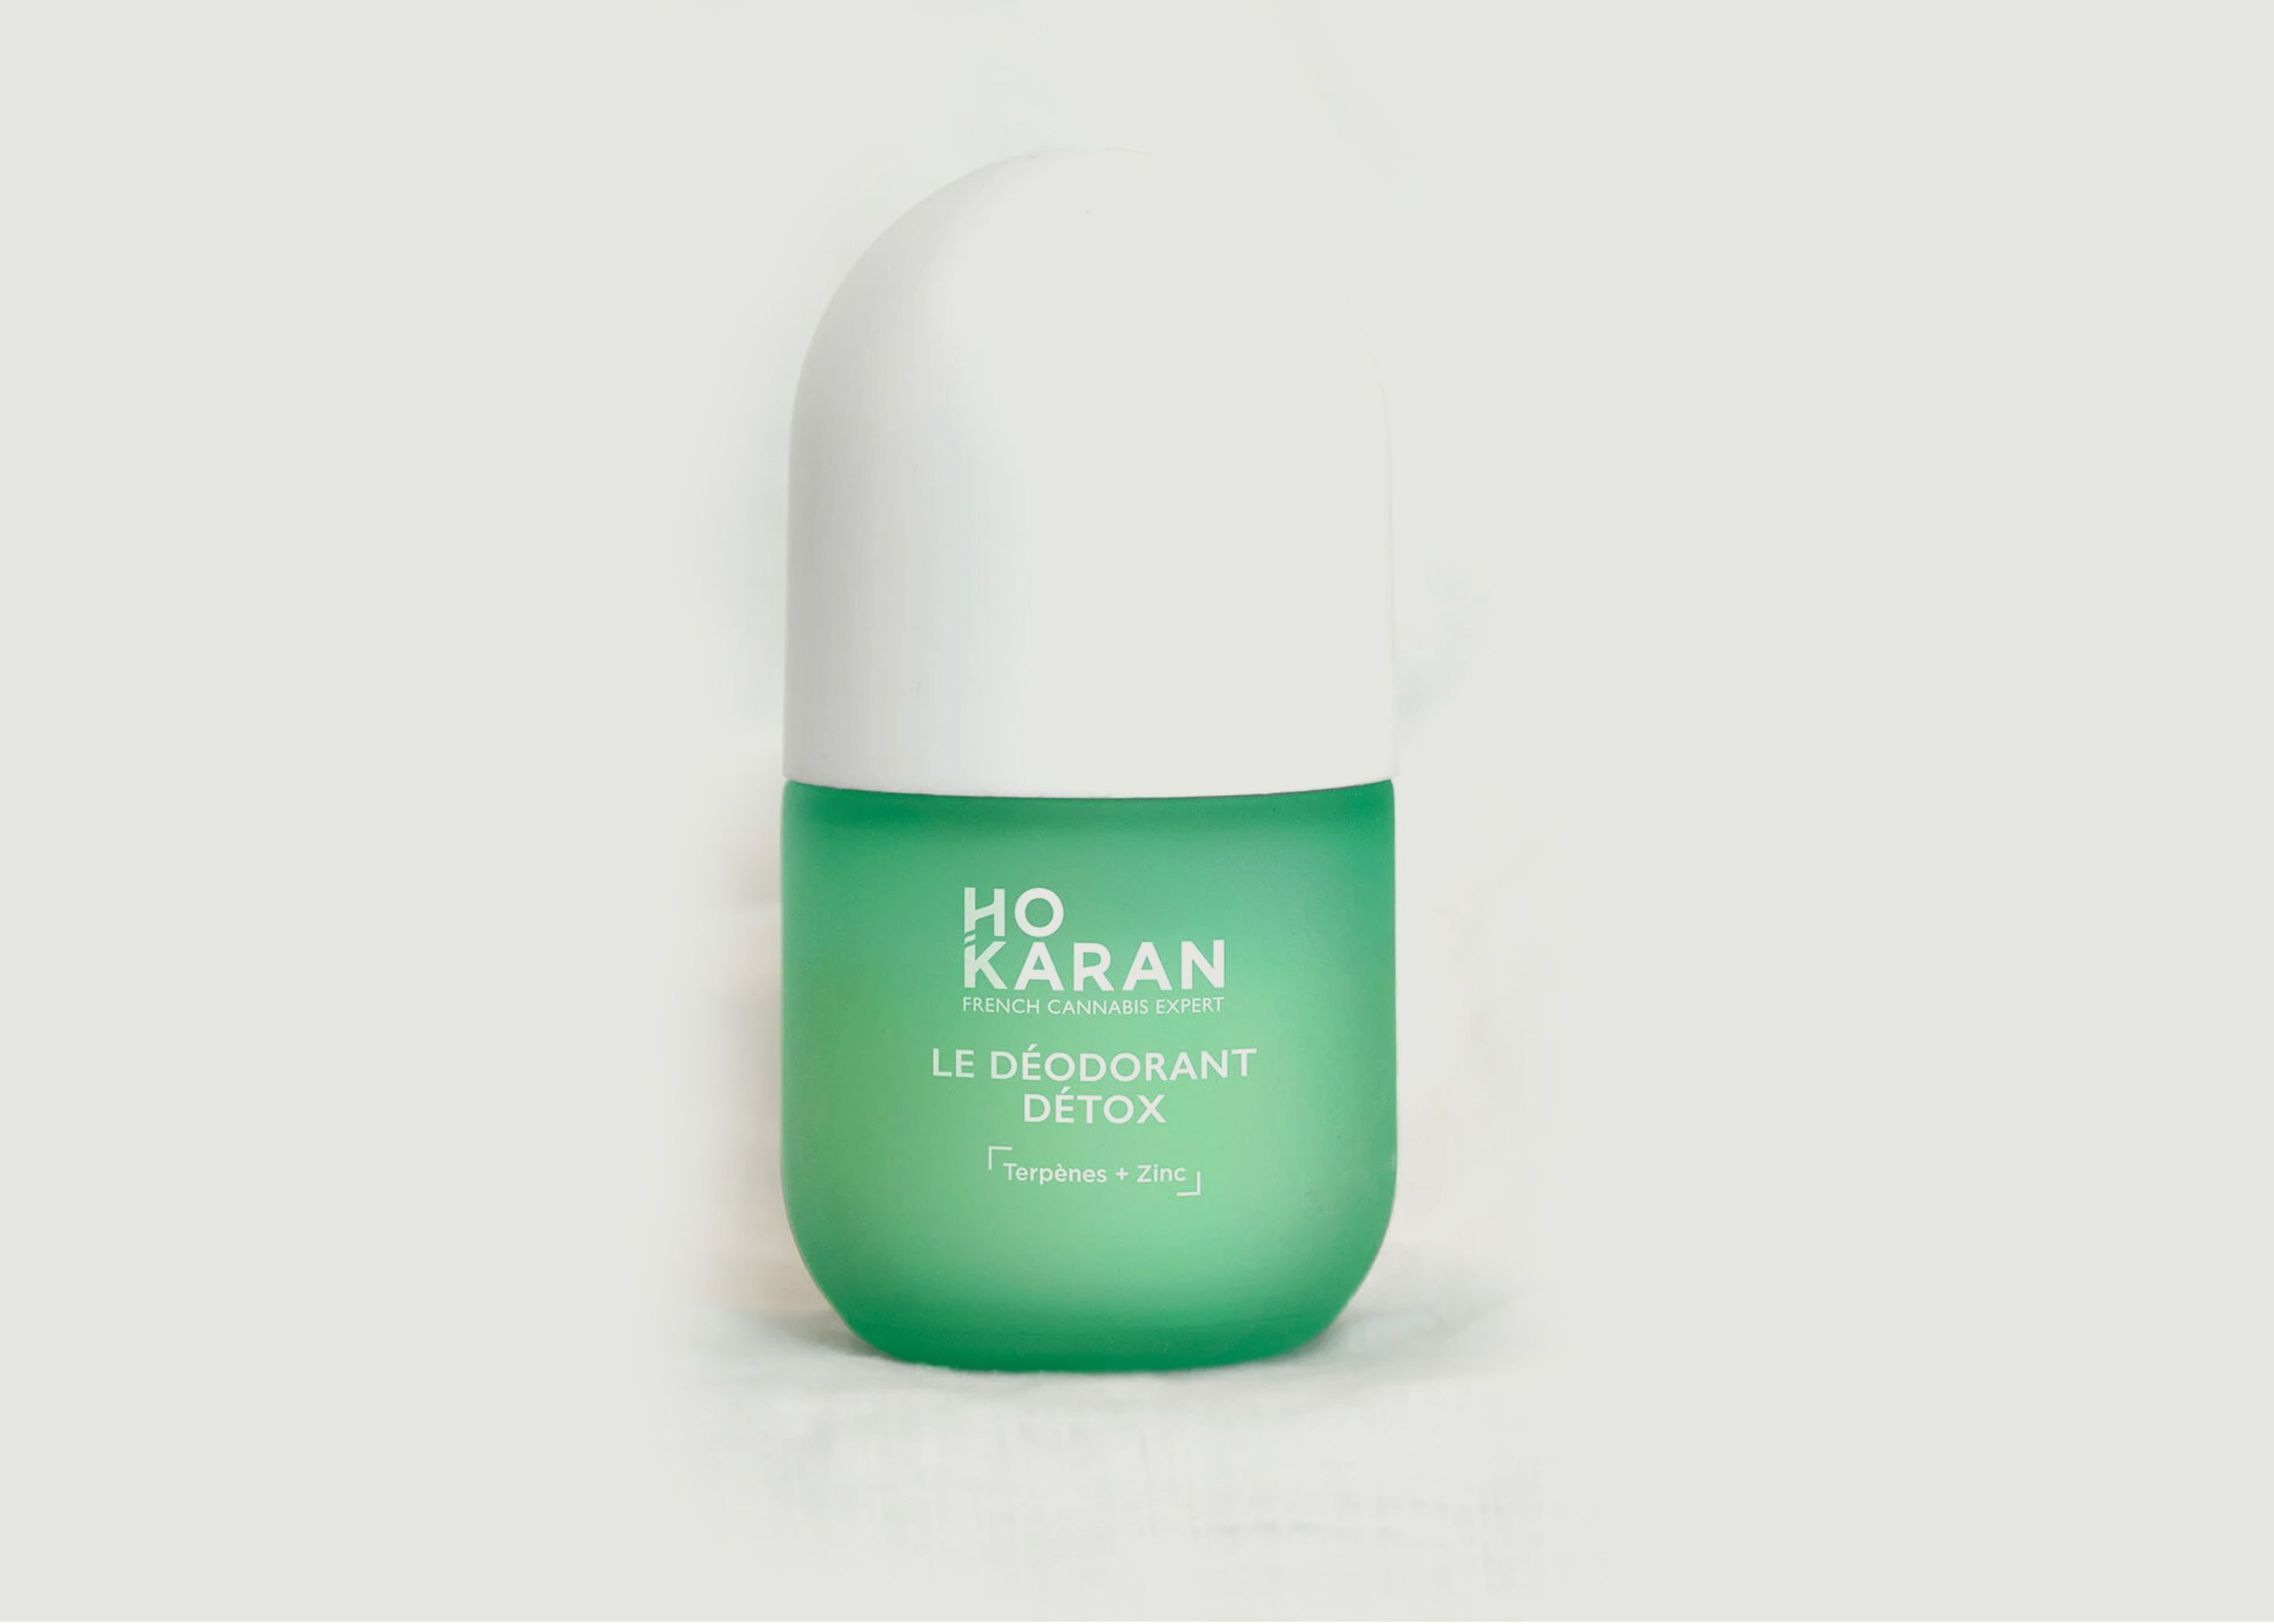 Le déodorant détox - Ho Karan